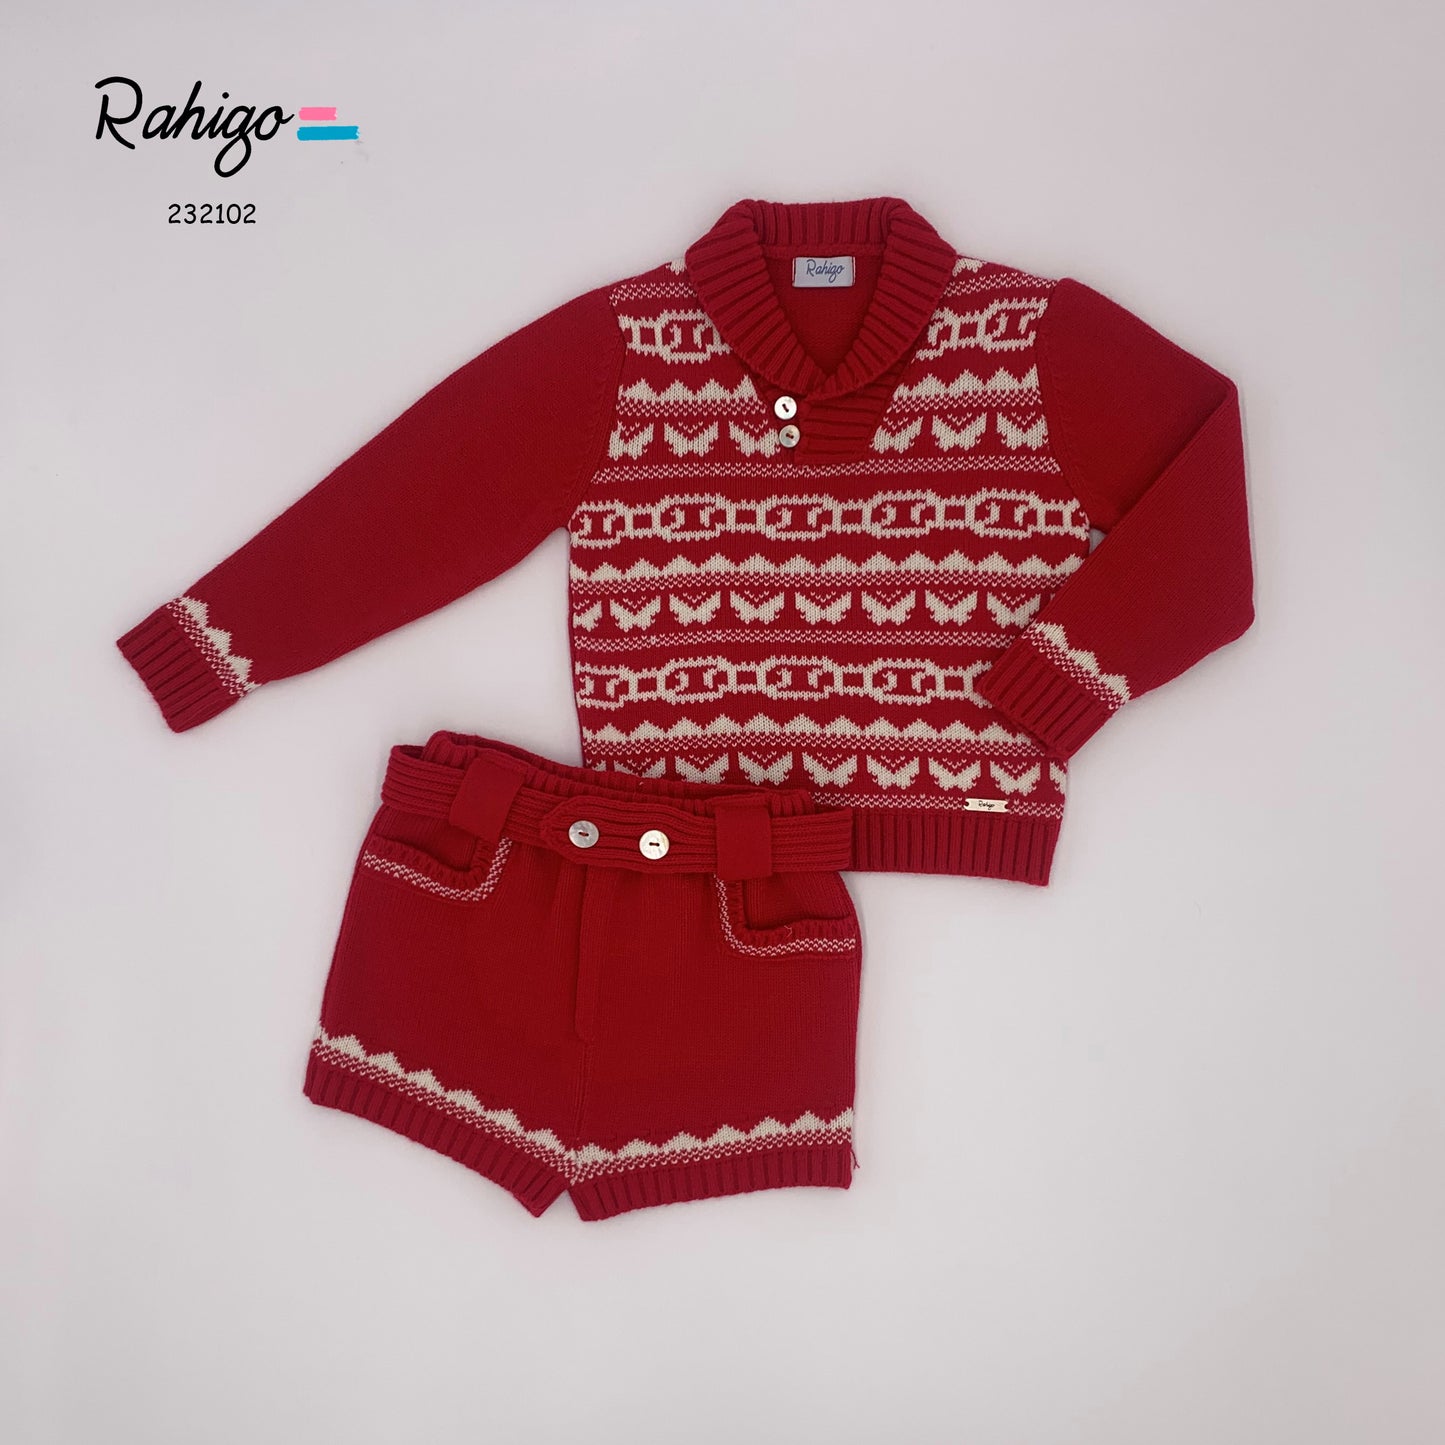 RAHIGO Red & Cream Baby Boys Short Set - 232102